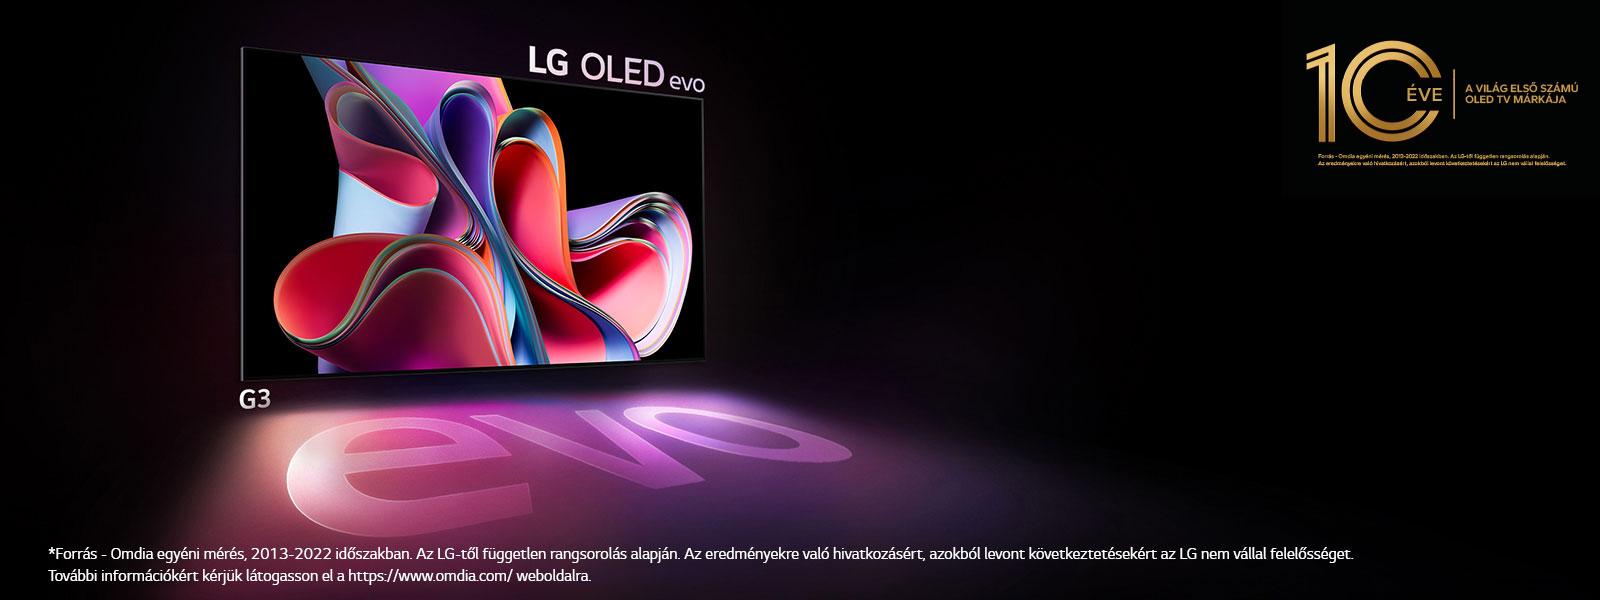 Az LG OLED G3 evo ragyog fényesen egy sötét térben. A jobb felső sarokban egy logó jelképezi az OLED 10. születésnapját.